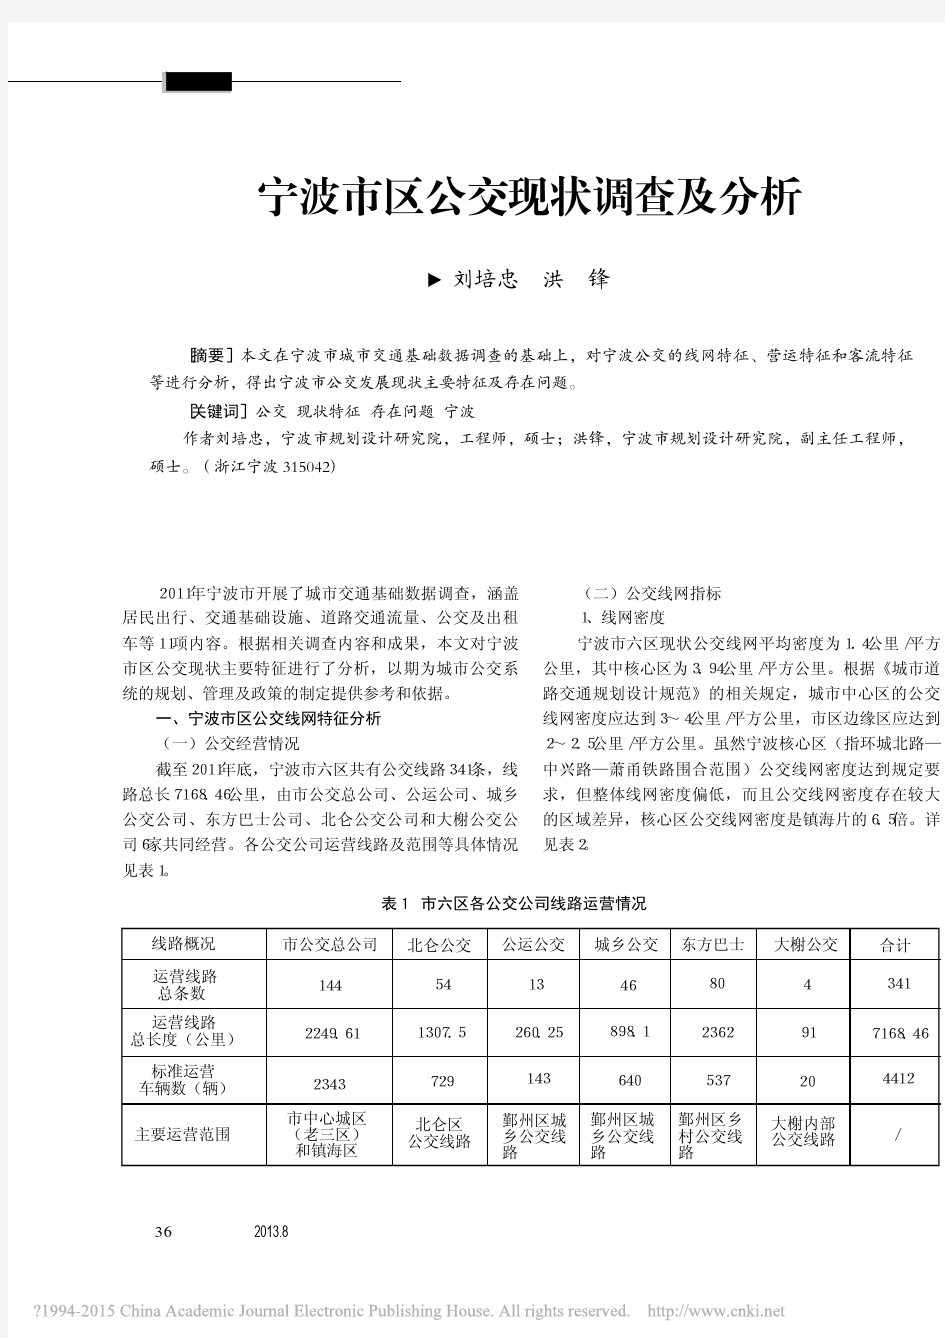 宁波市区公交现状调查及分析_刘培忠